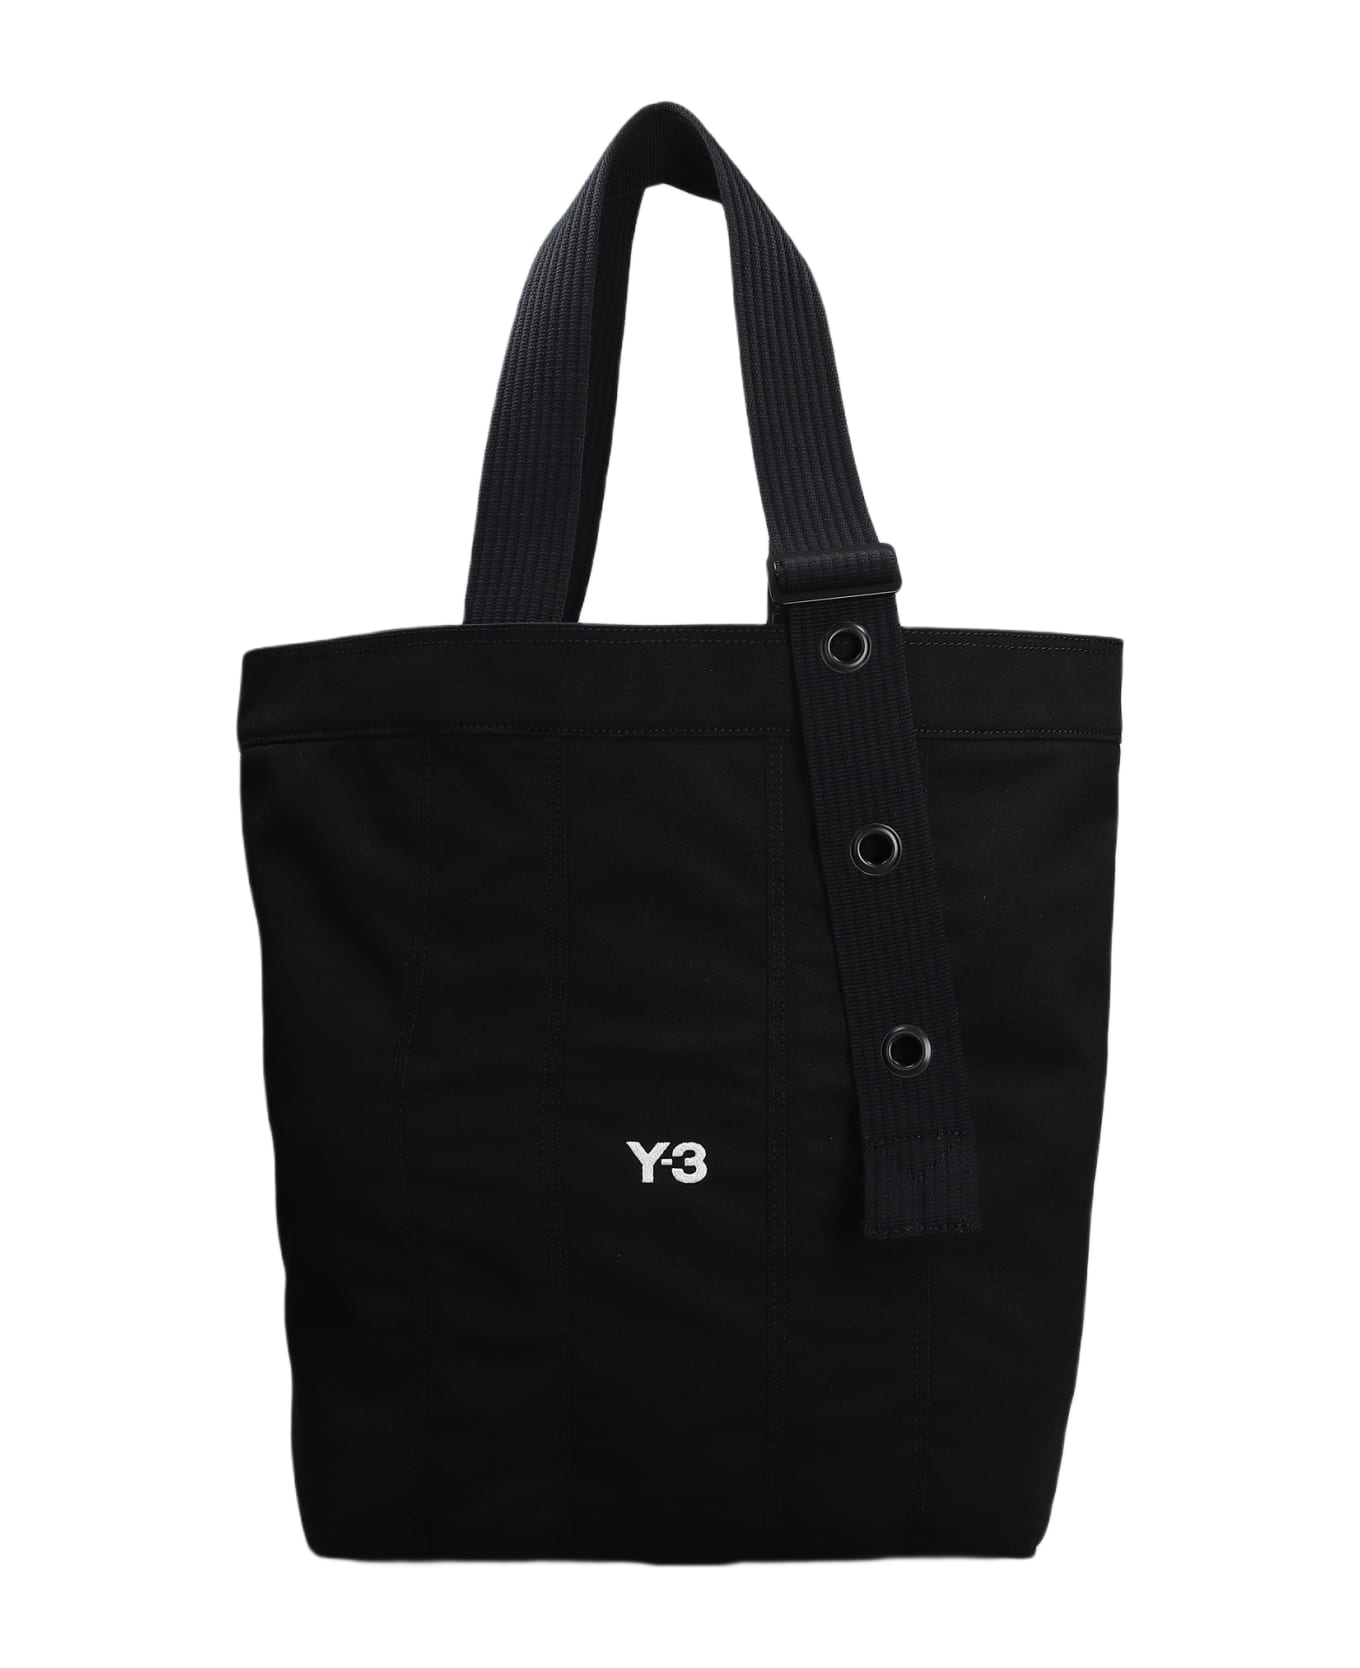 Y-3 Tote Bag - Black